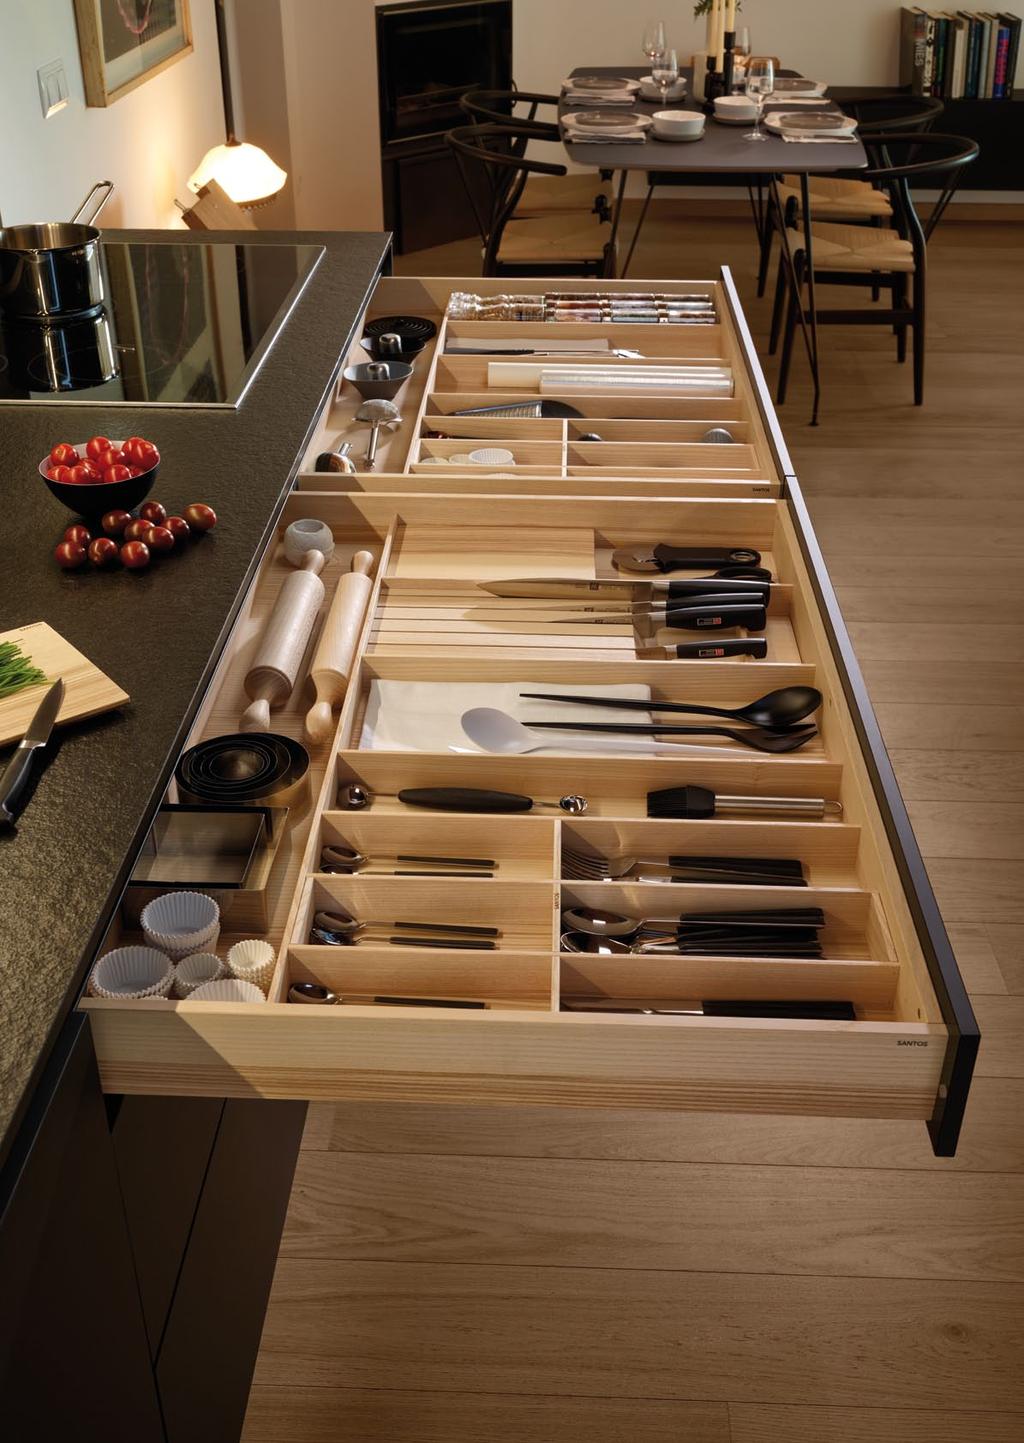 El cajón superior, realizado en madera de fresno olivo, recoge los utensilios de uso más frecuente en la cocina.